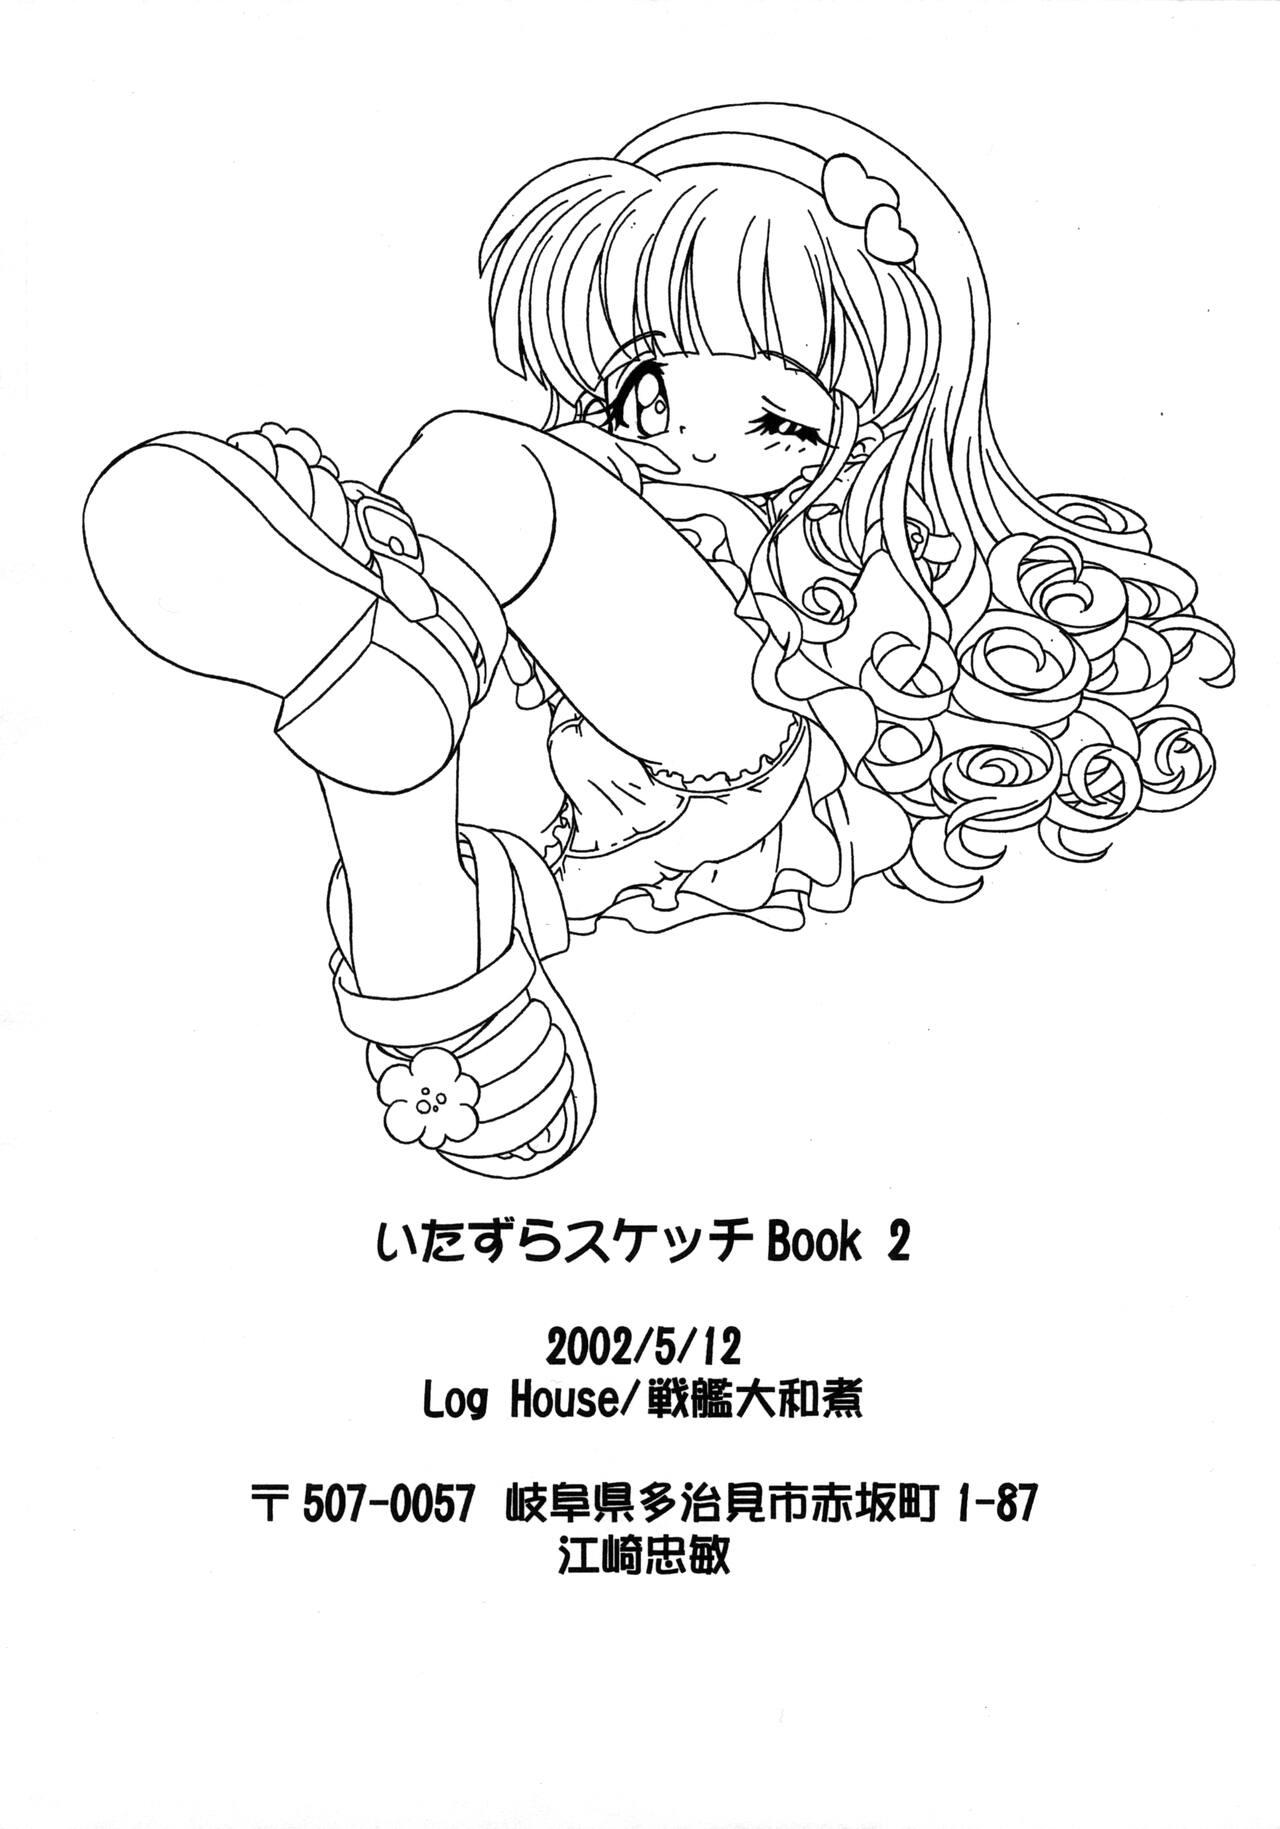 Itazura Sketch Book 2 12